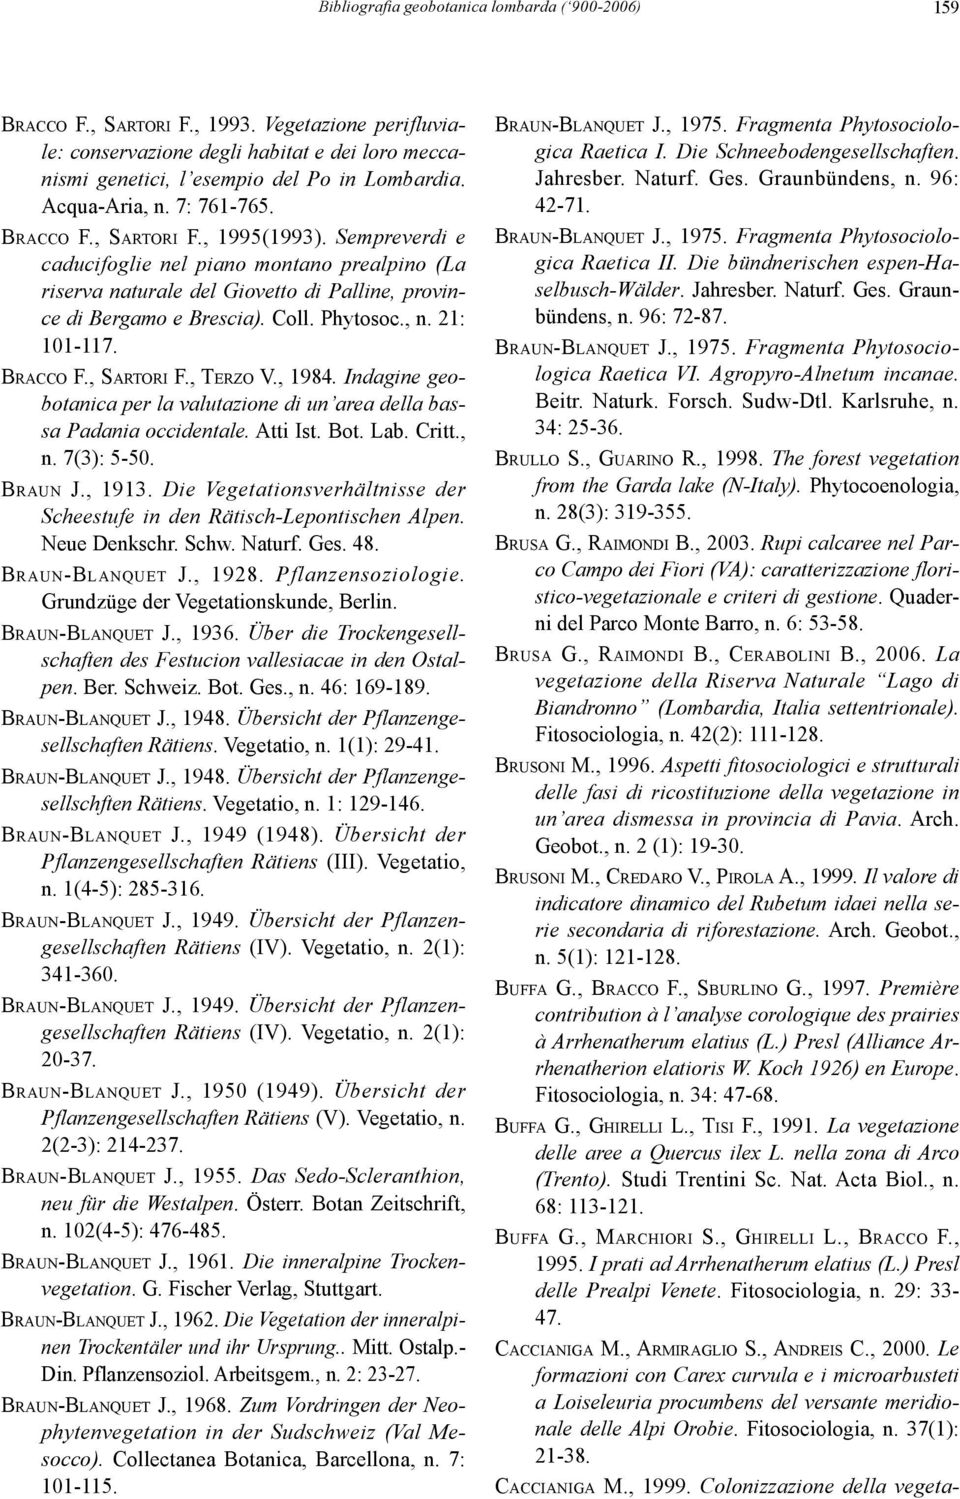 Phytosoc., n. 21: 101-117. BRACCO F., SARTORI F., TERZO V., 1984. Indagine geobotanica per la valutazione di un area della bassa Padania occidentale. Atti Ist. Bot. Lab. Critt., n. 7(3): 5-50.